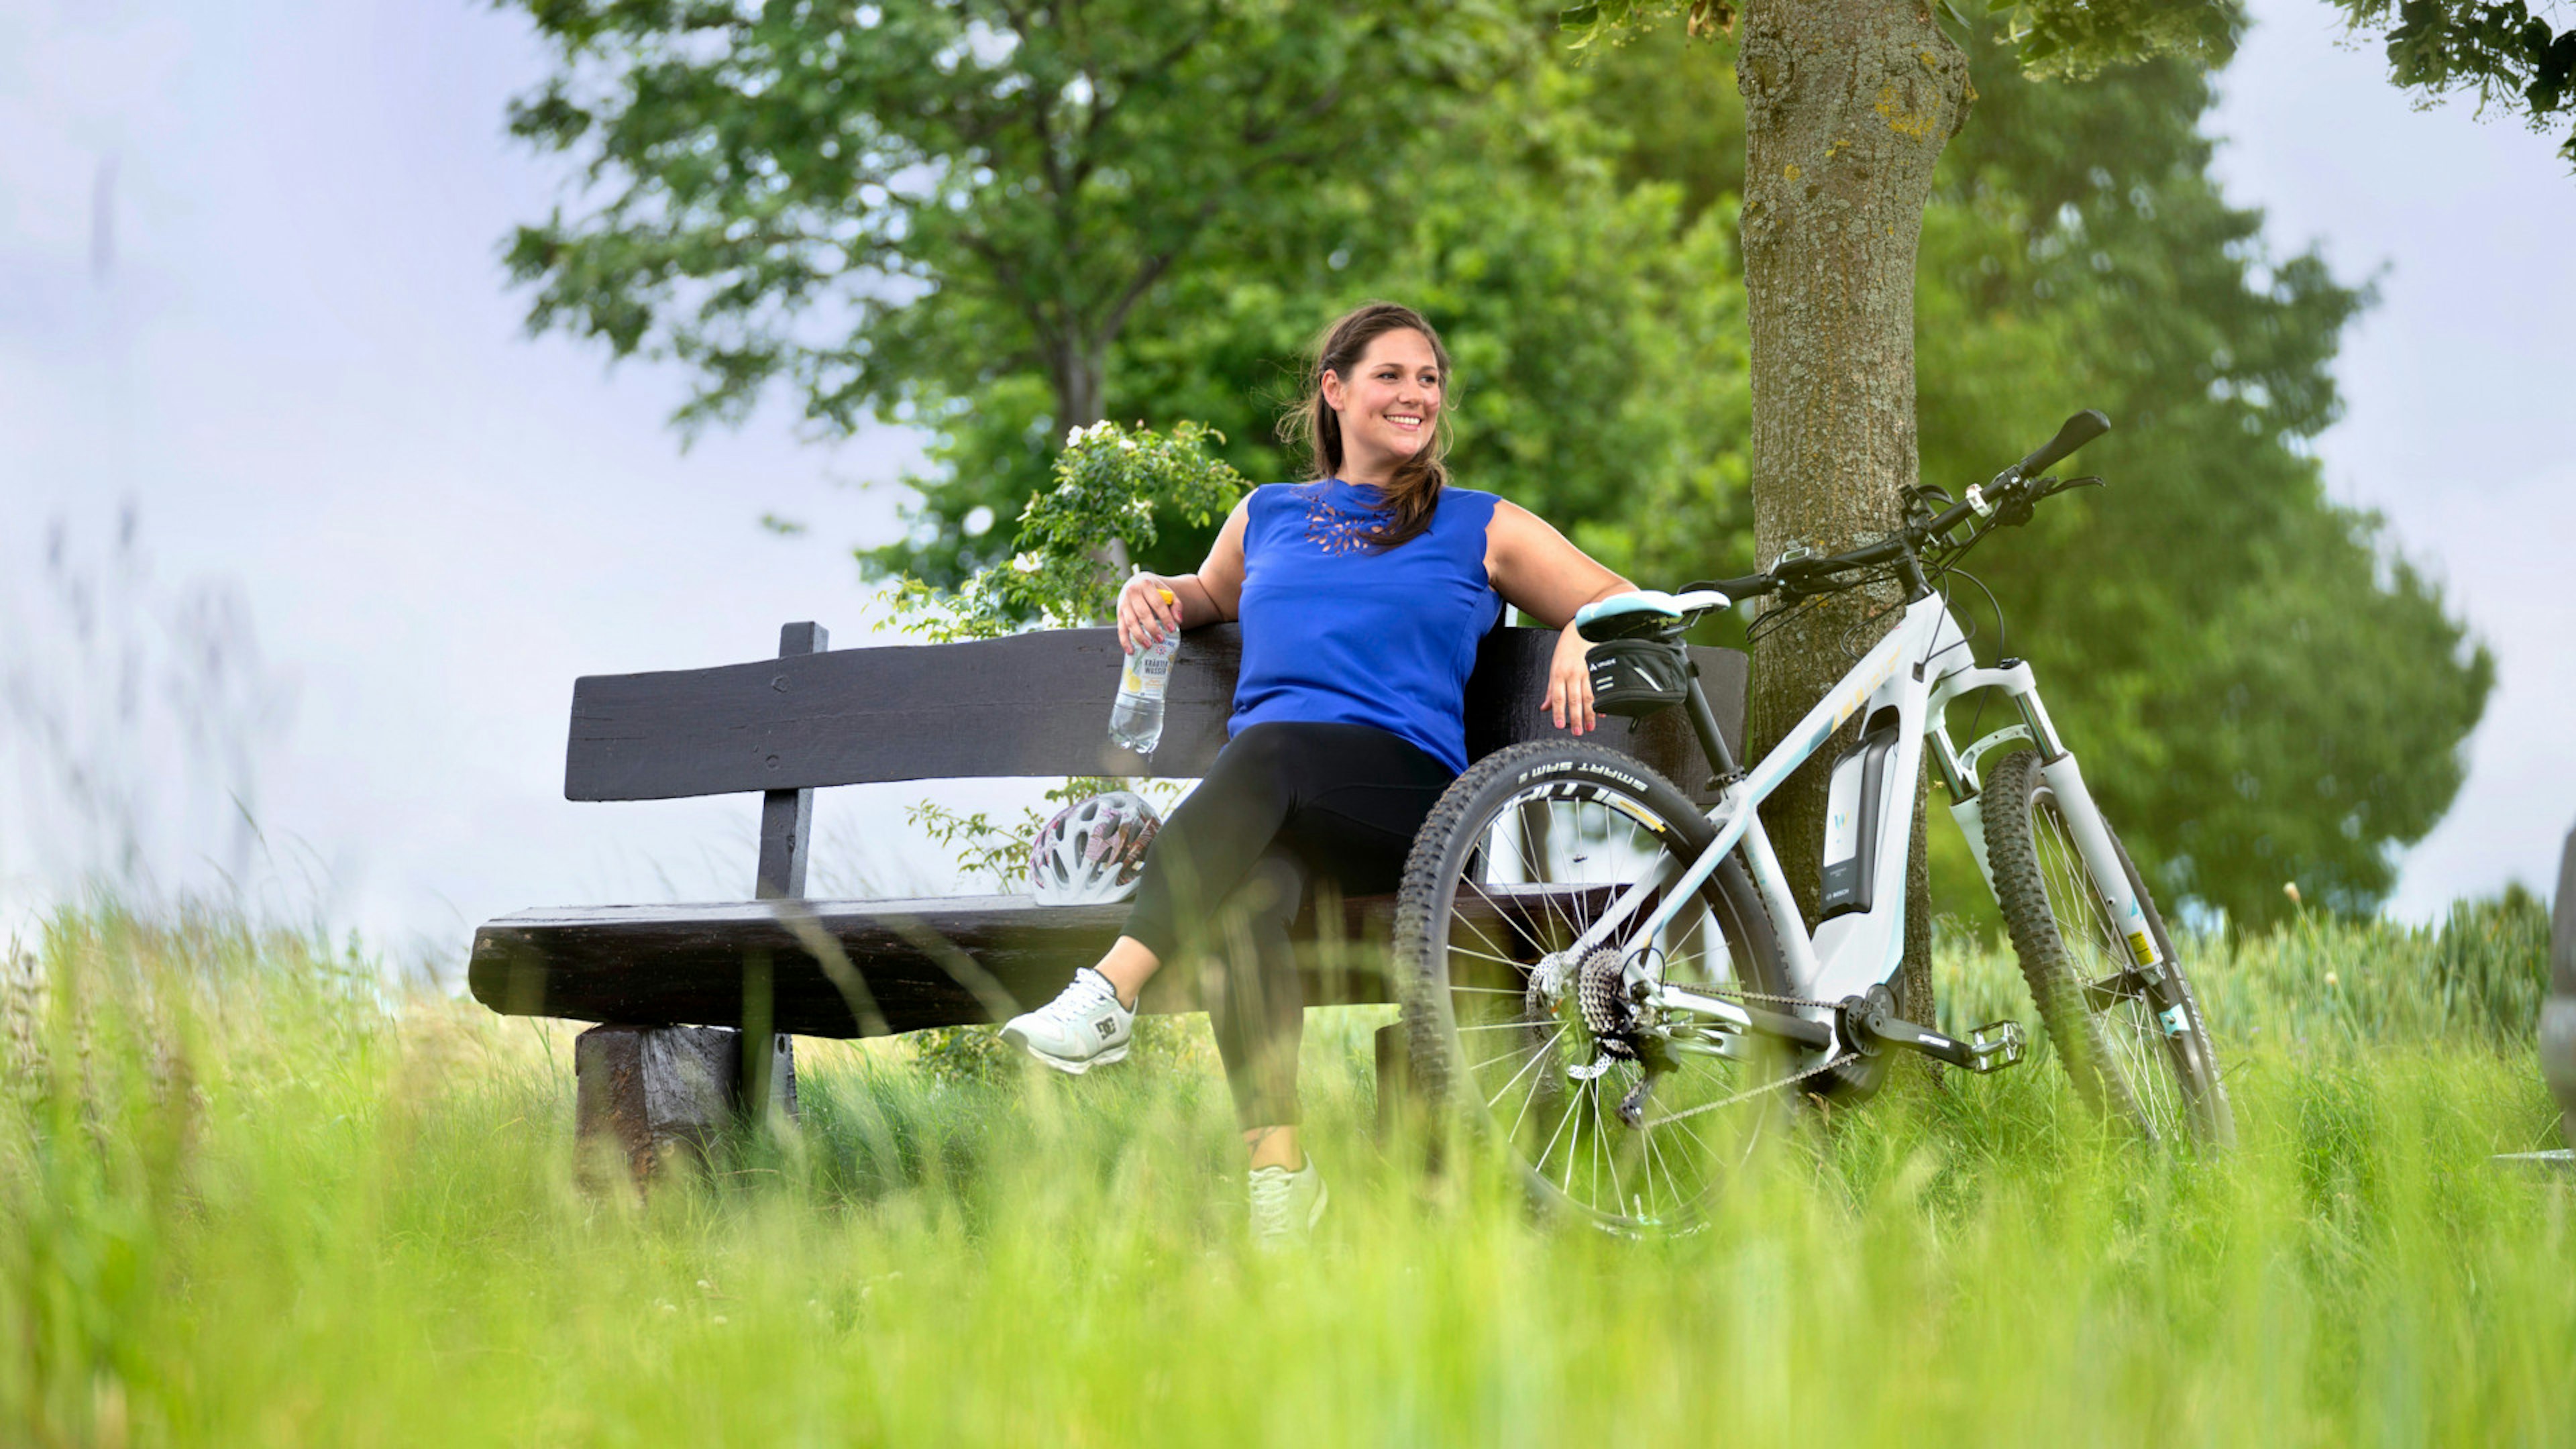 Eine Frau auf einer Bank im Freien mit einer Flasche Gerolsteiner Kräuterwasser in der Hand, ein Fahrrad steht neben ihr.